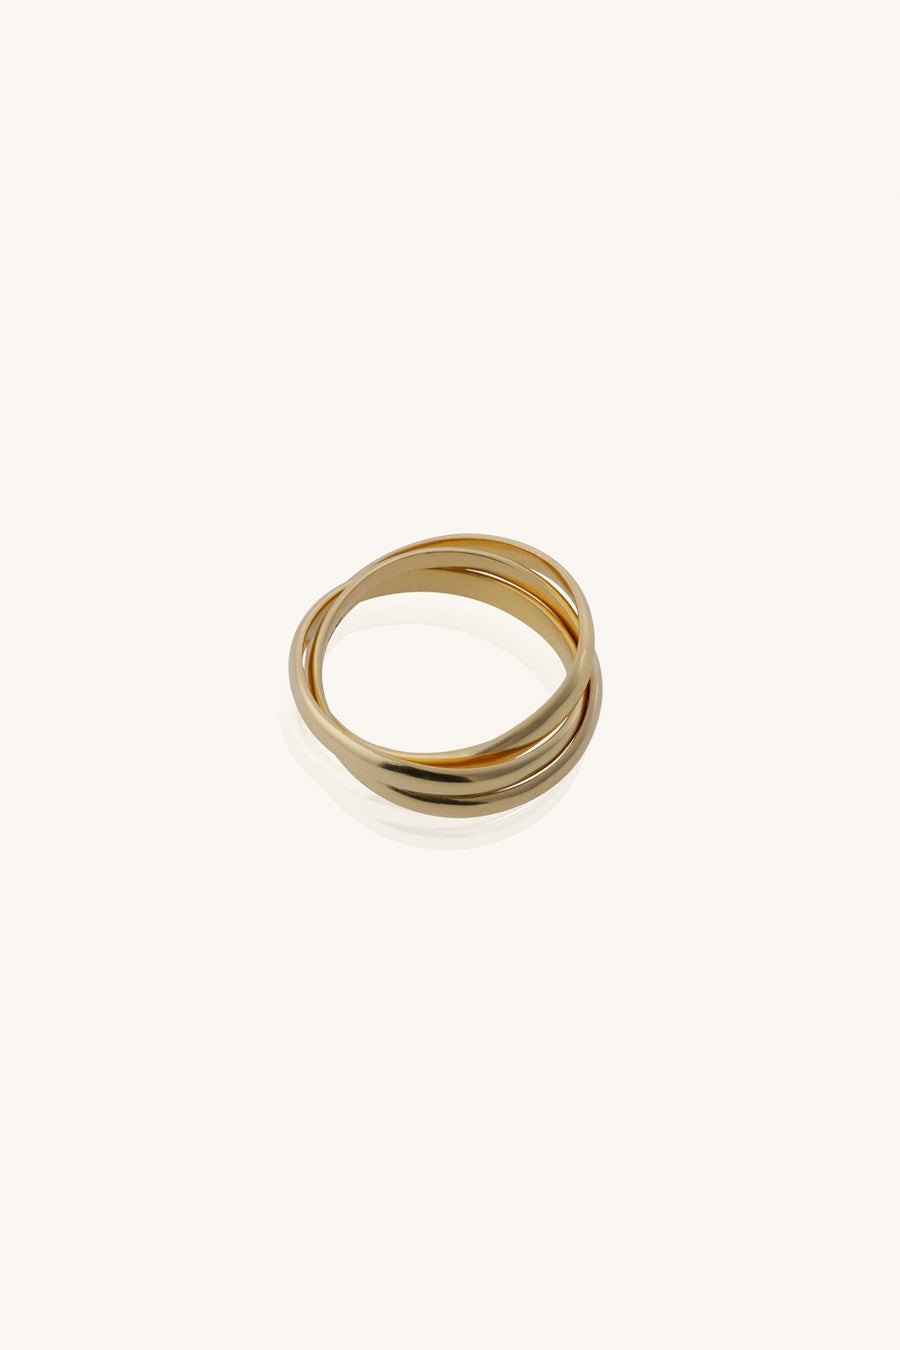 Golden Interlock Ring, Linked Ring, Interlocking Circle Ring, Modern Ring